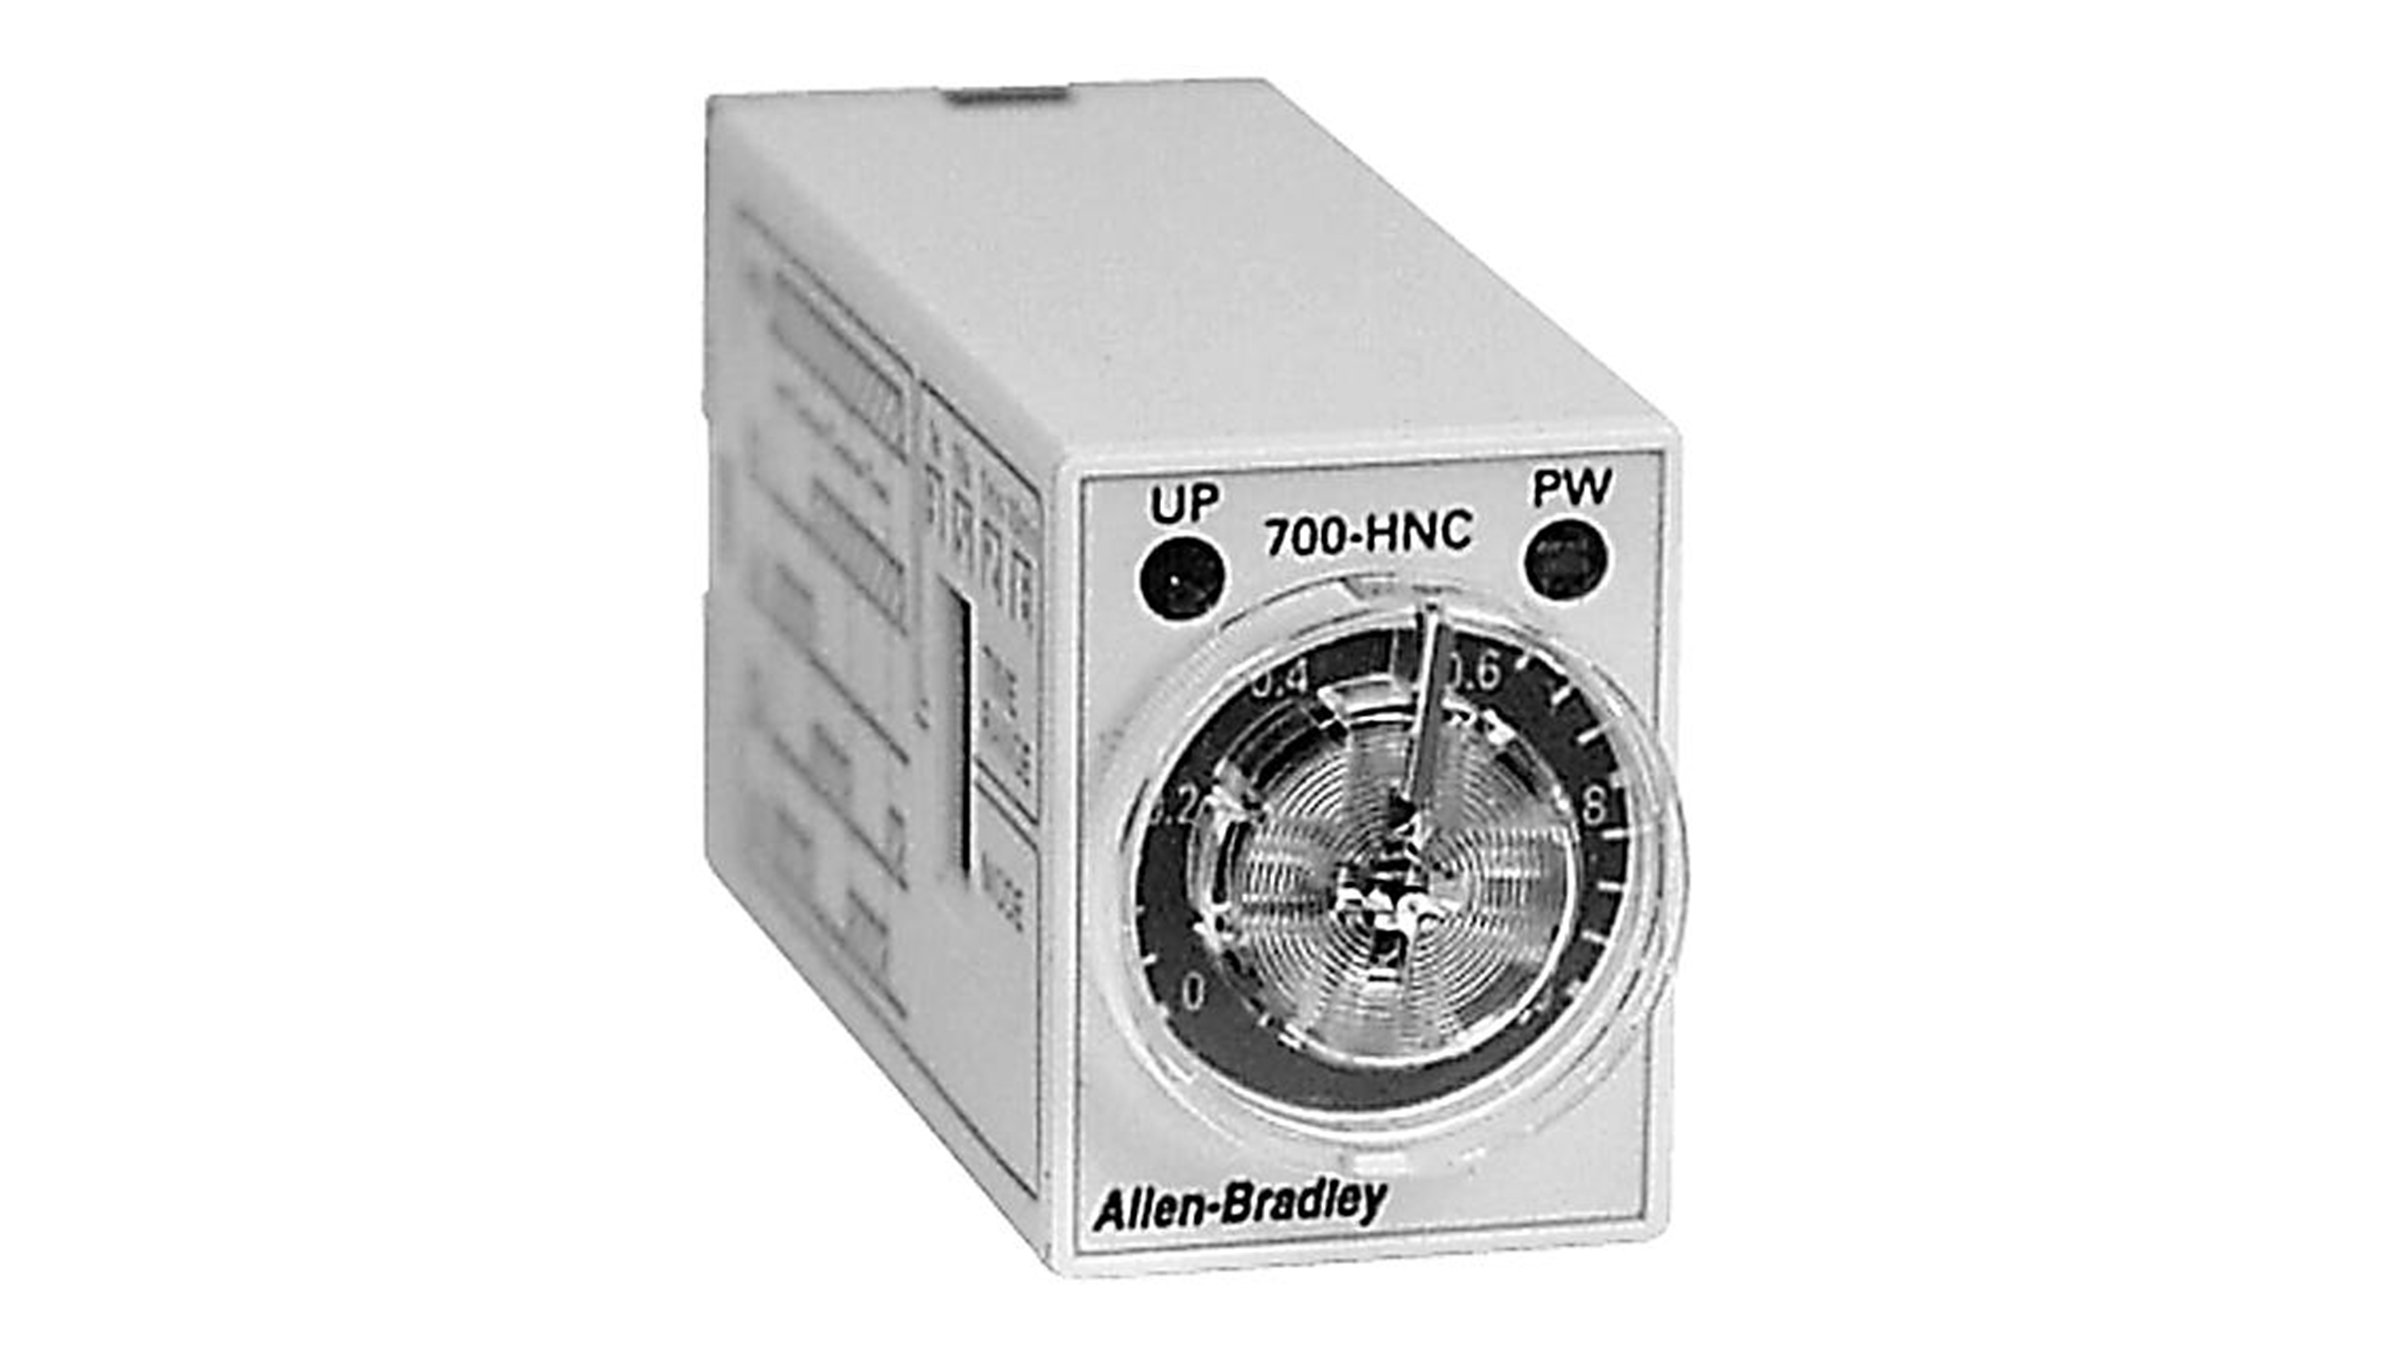 I minirelè temporizzatori serie 700-HNC Allen-Bradley sono fra i più piccoli relè temporizzatori disponibili.